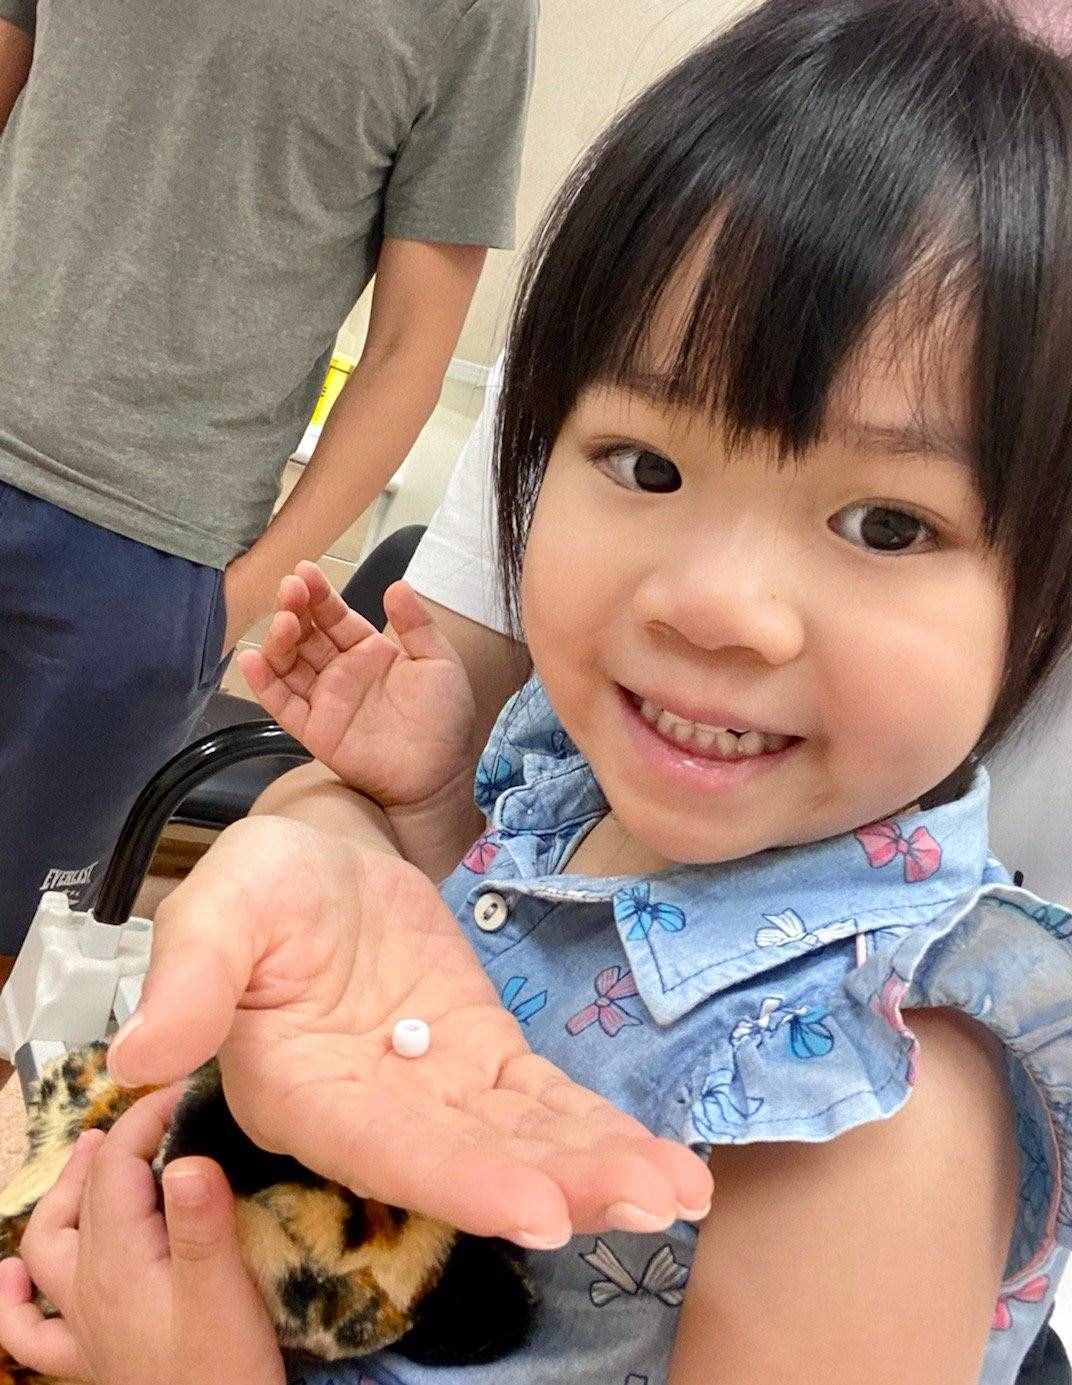 邝文珣3岁女儿将异物塞鼻孔，拿不出来后痛哭，已紧急送院治疗